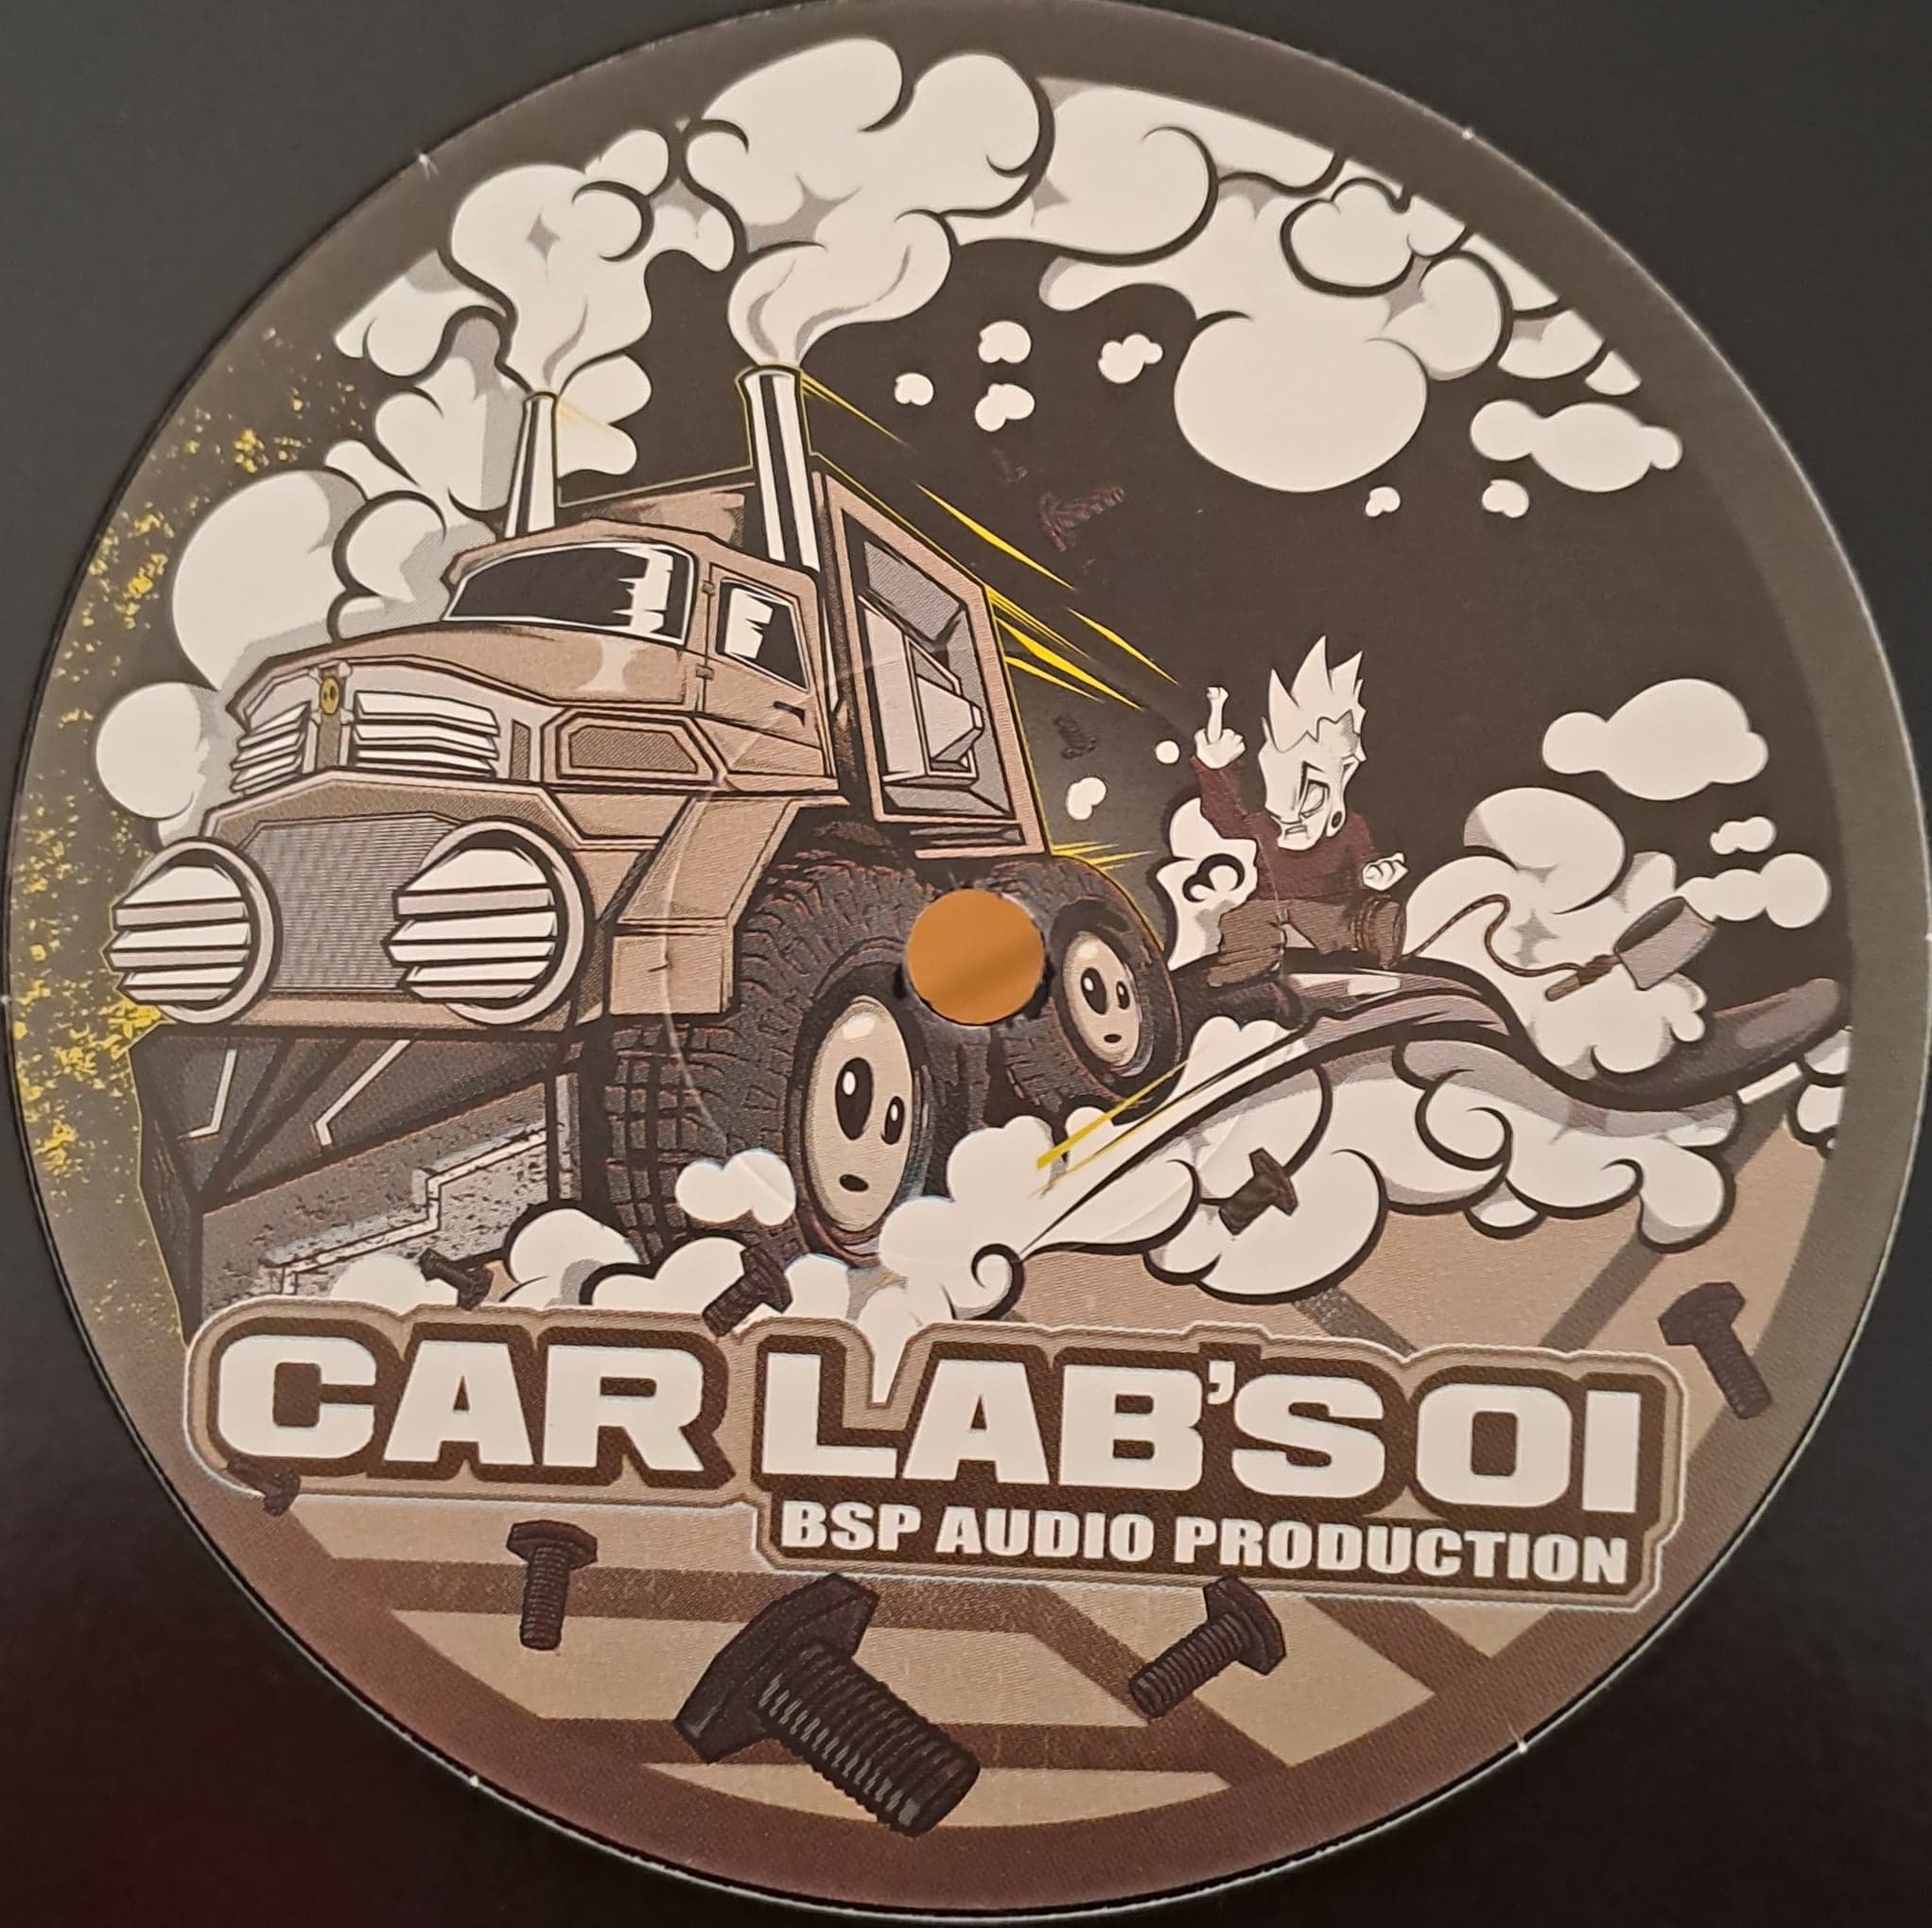 Car Lab's 01 (toute dernière copie en stock) - vinyle freetekno